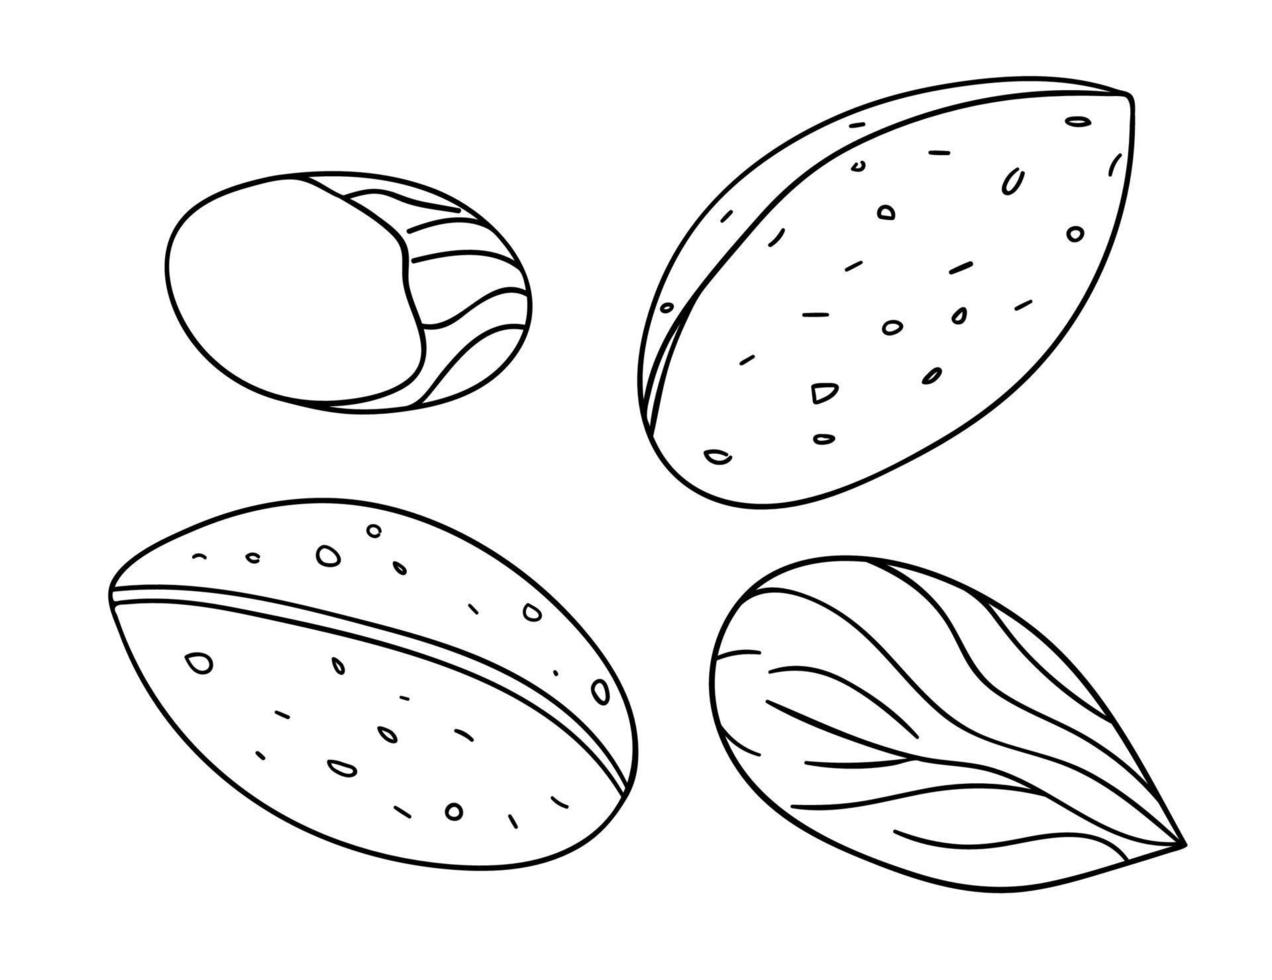 vector zwart-wit amandel pictogram. set van geïsoleerde zwart-wit noten. voedsel lijntekening illustratie in cartoon of doodle stijl geïsoleerd op een witte achtergrond.